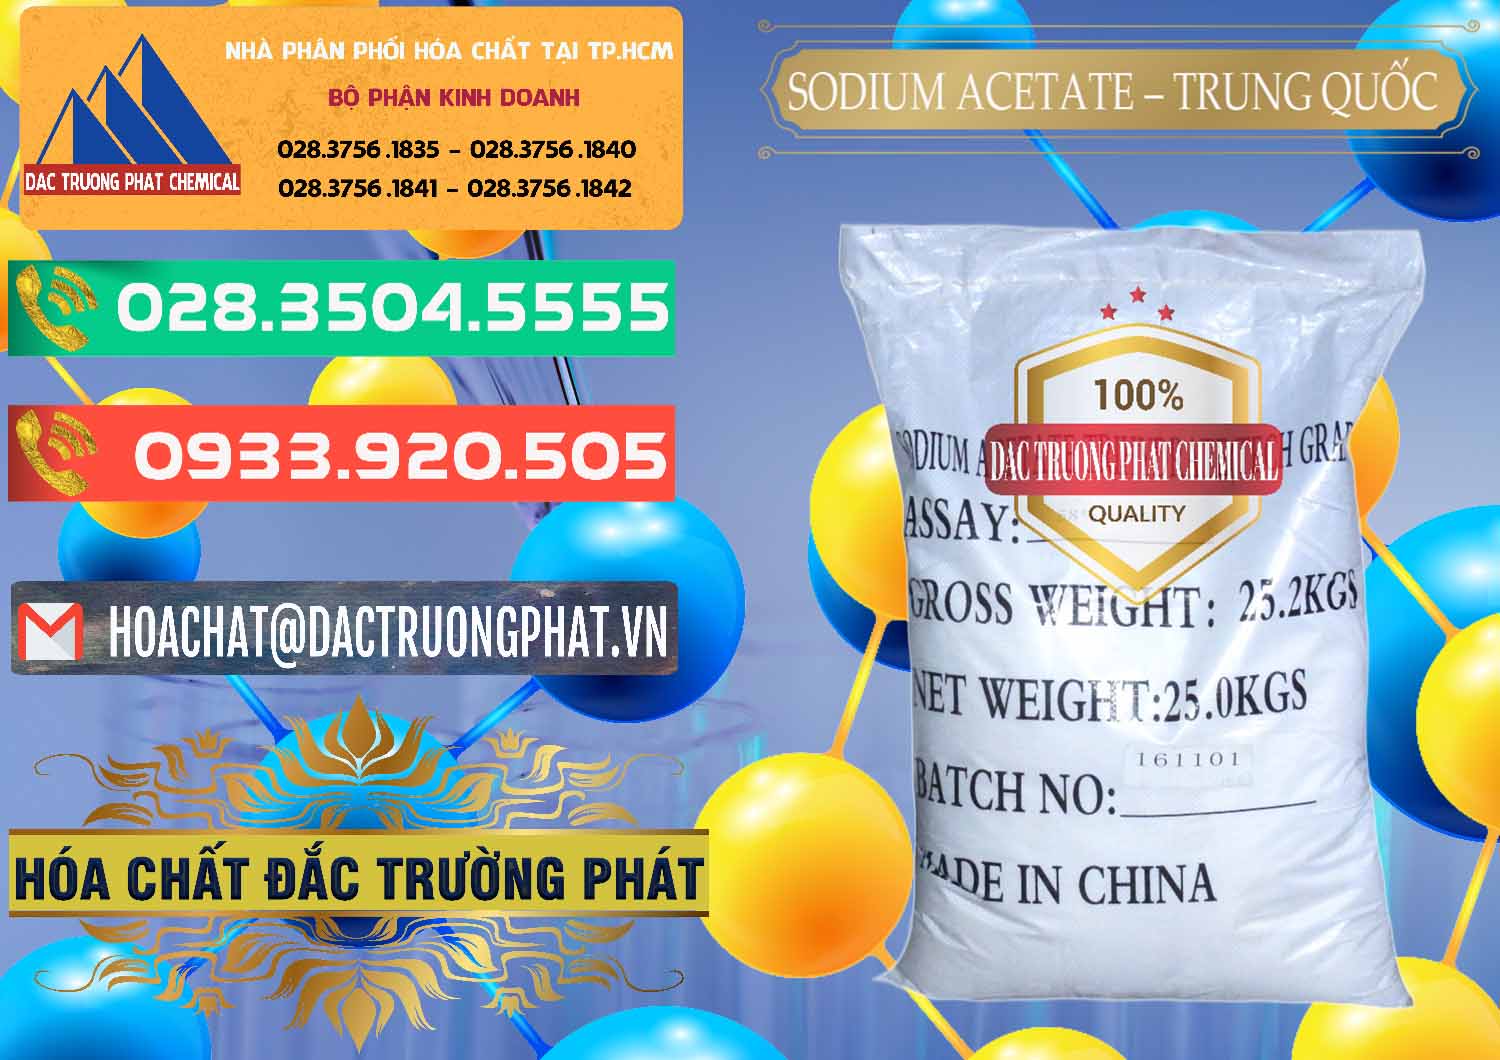 Nơi kinh doanh _ bán Sodium Acetate - Natri Acetate Trung Quốc China - 0134 - Đơn vị chuyên kinh doanh & phân phối hóa chất tại TP.HCM - congtyhoachat.com.vn